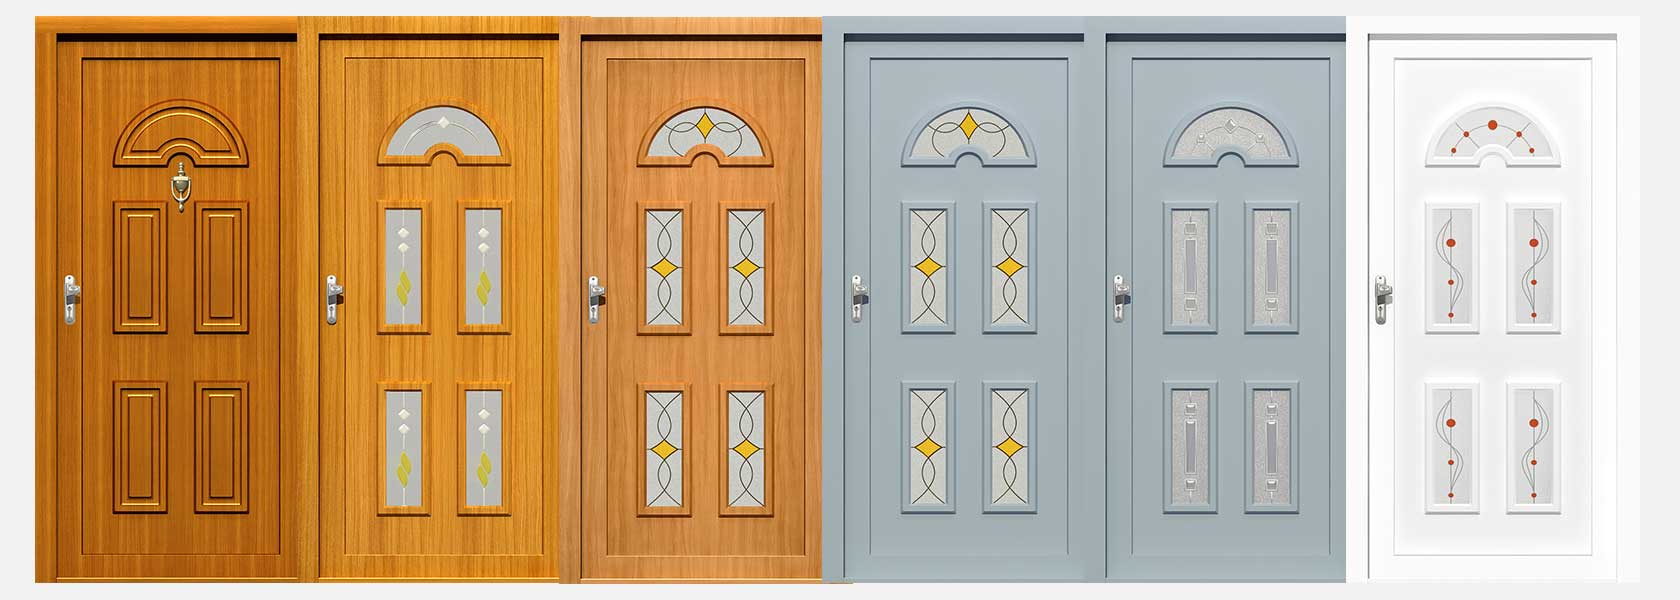 HPL front doors panels